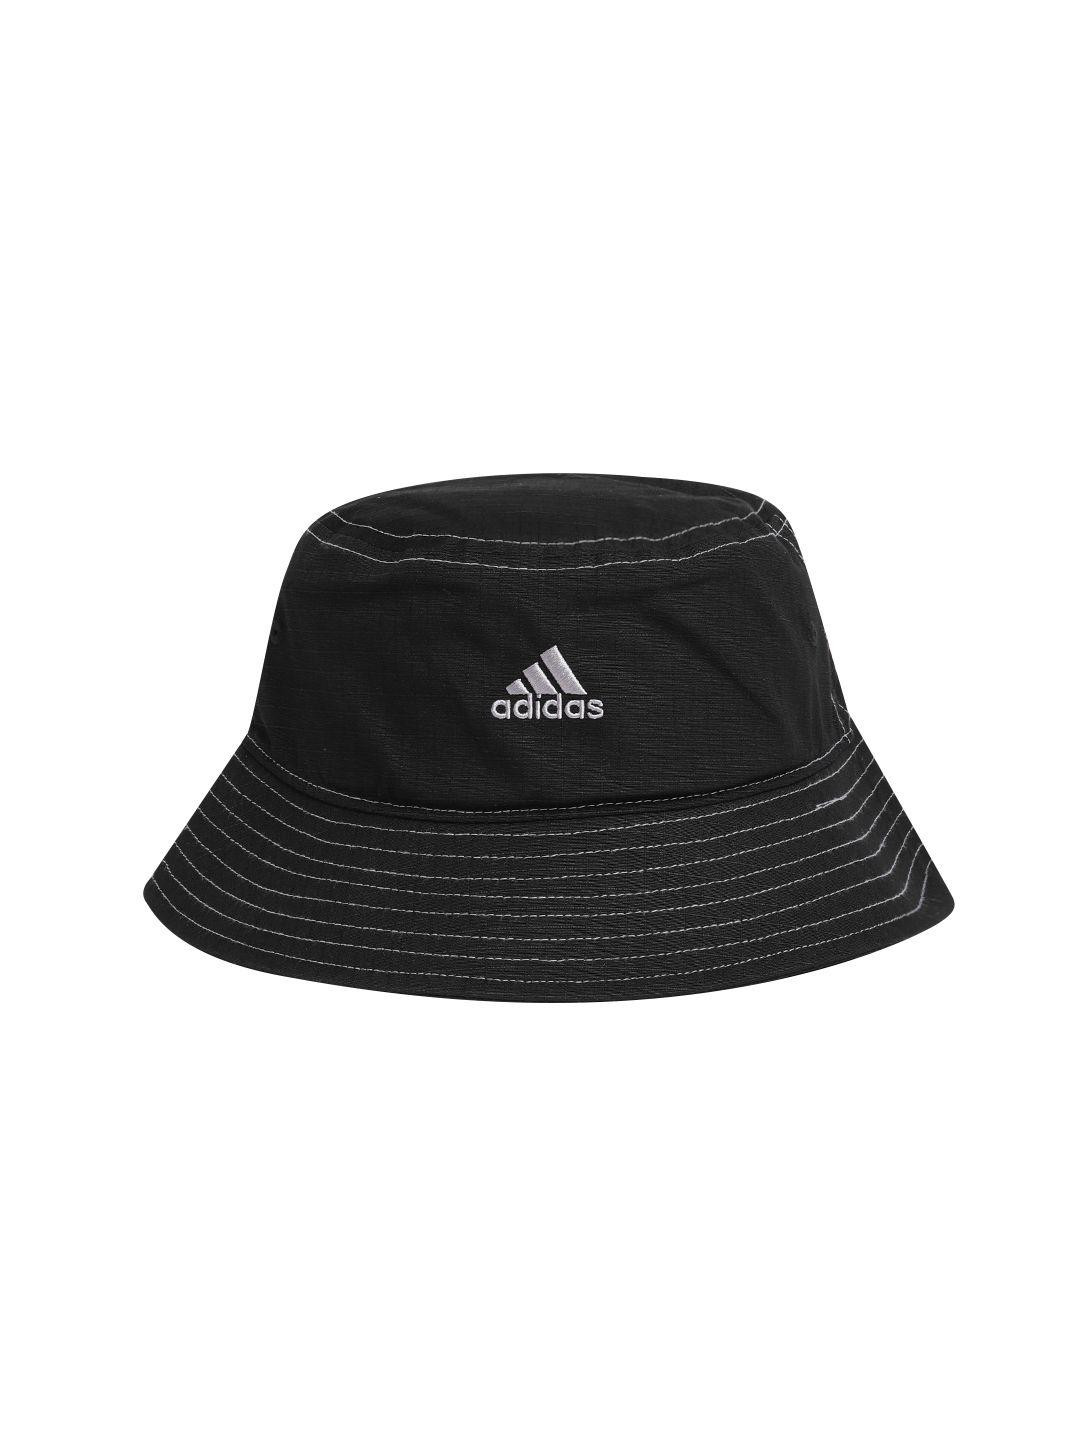 adidas unisex cotton brand logo detail spw clas bucket hat